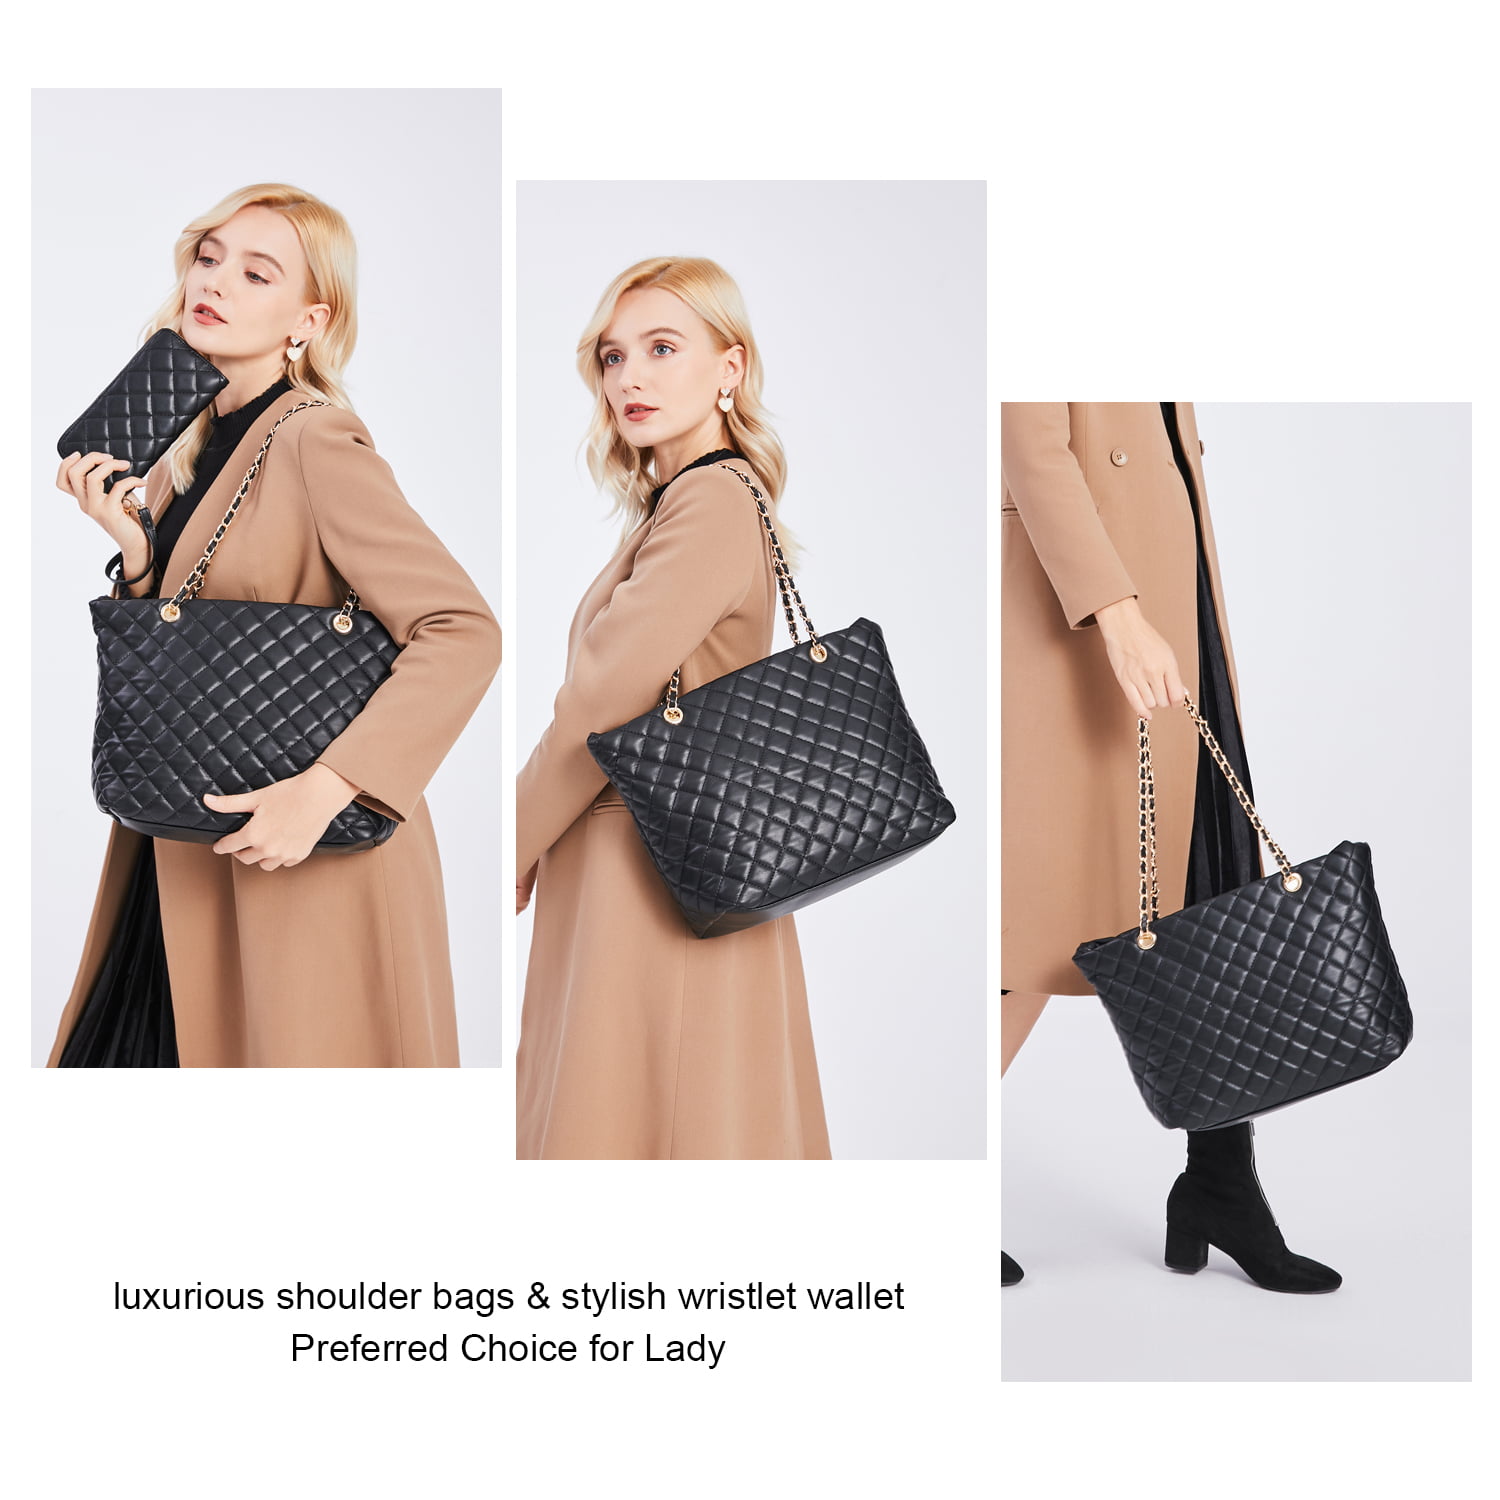 SIBY Women 's Hobo Dumpling Bag (Black) : Amazon.in: Fashion